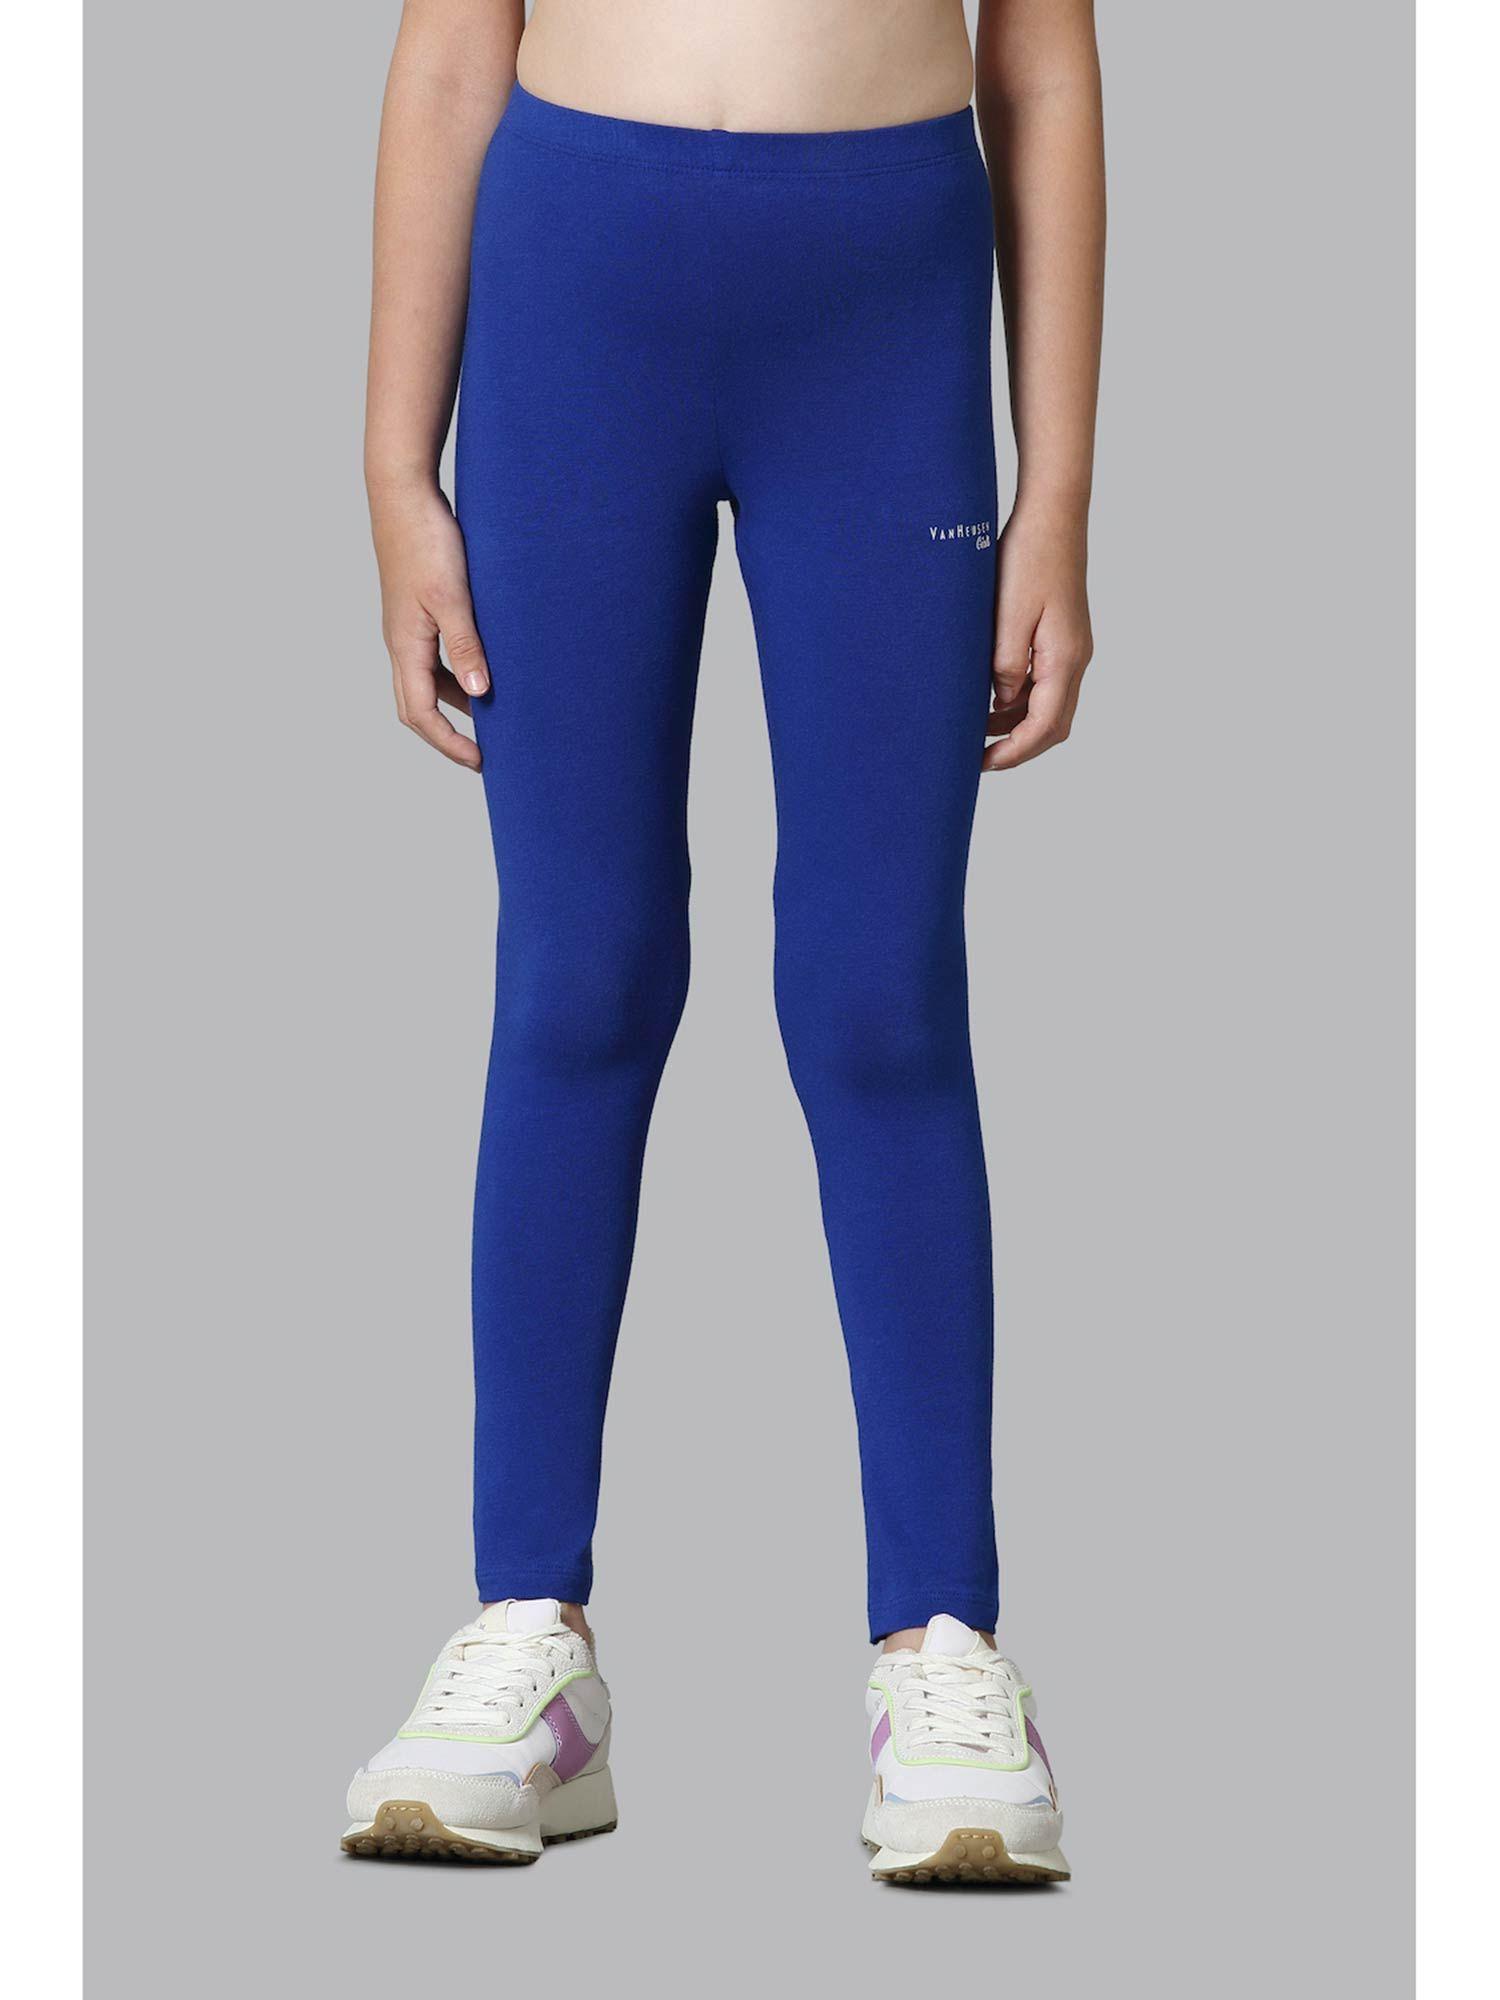 girls-power-plus-&-super-soft-leggings---sodalite-blue